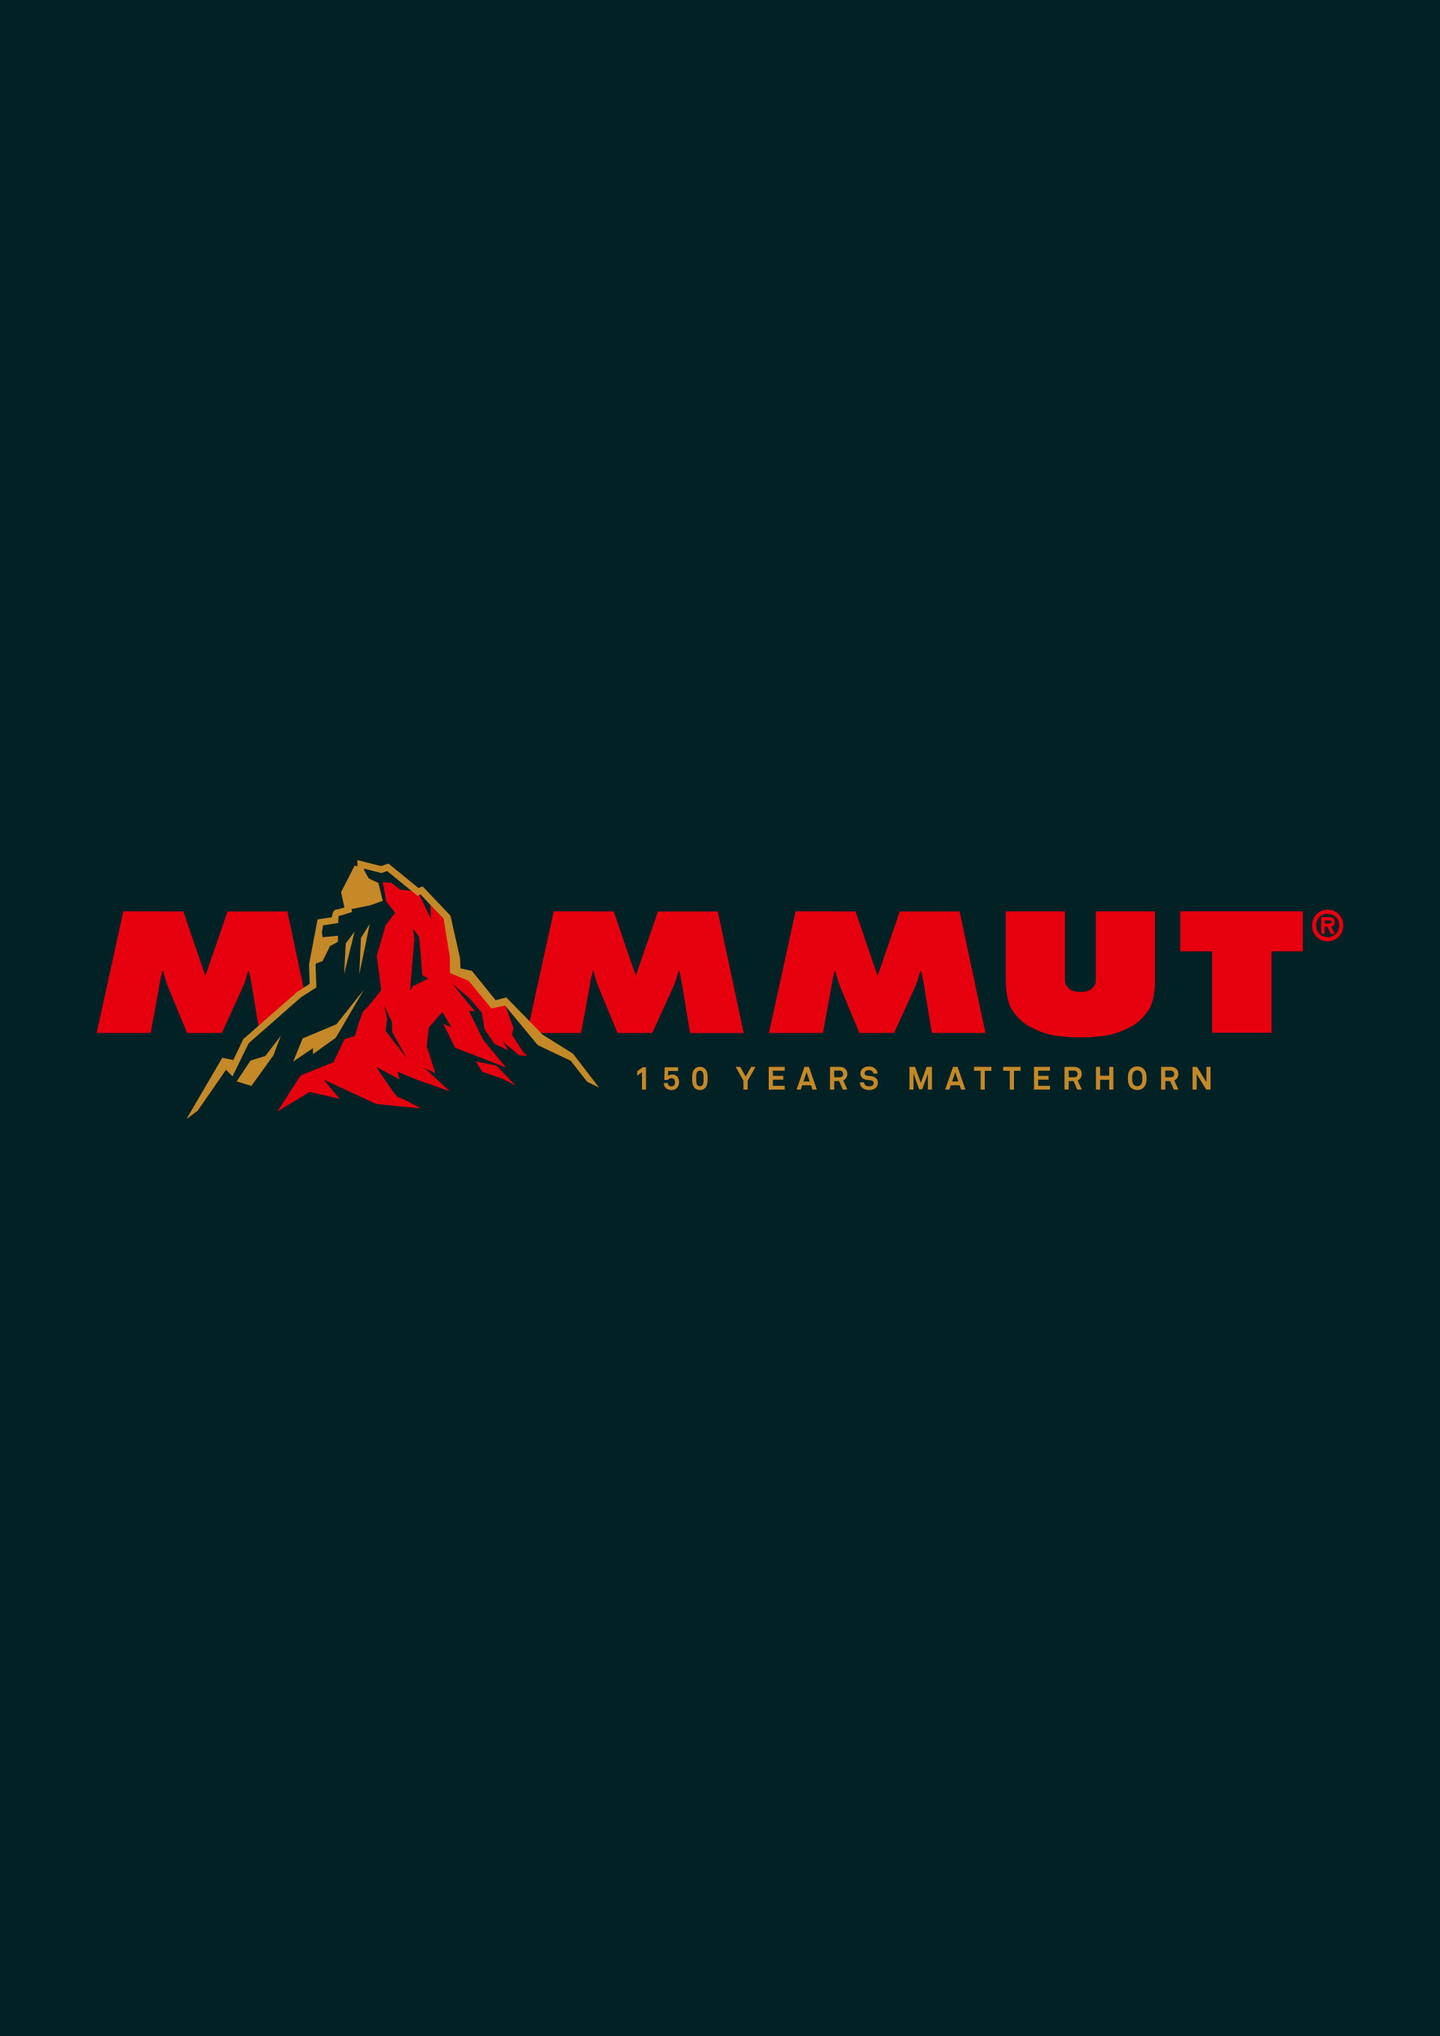 erstbesteigung_logo_mammut_2.jpg